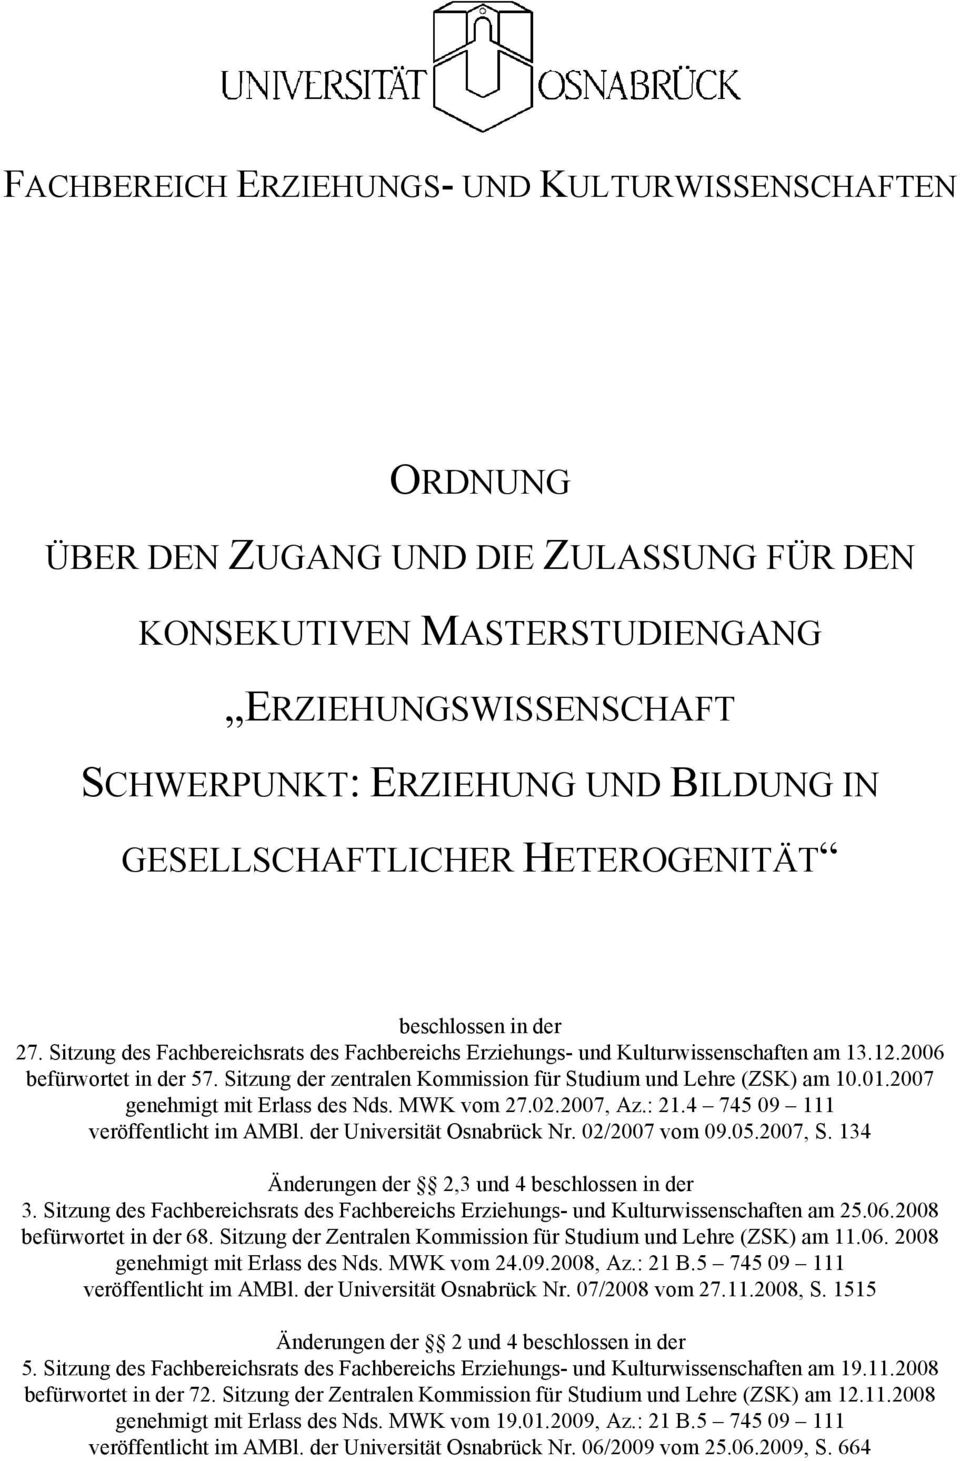 Sitzung der zentralen Kommission für Studium und Lehre (ZSK) am 10.01.2007 genehmigt mit Erlass des Nds. MWK vom 27.02.2007, Az.: 21.4 745 09 111 veröffentlicht im AMBl. der Universität Osnabrück Nr.